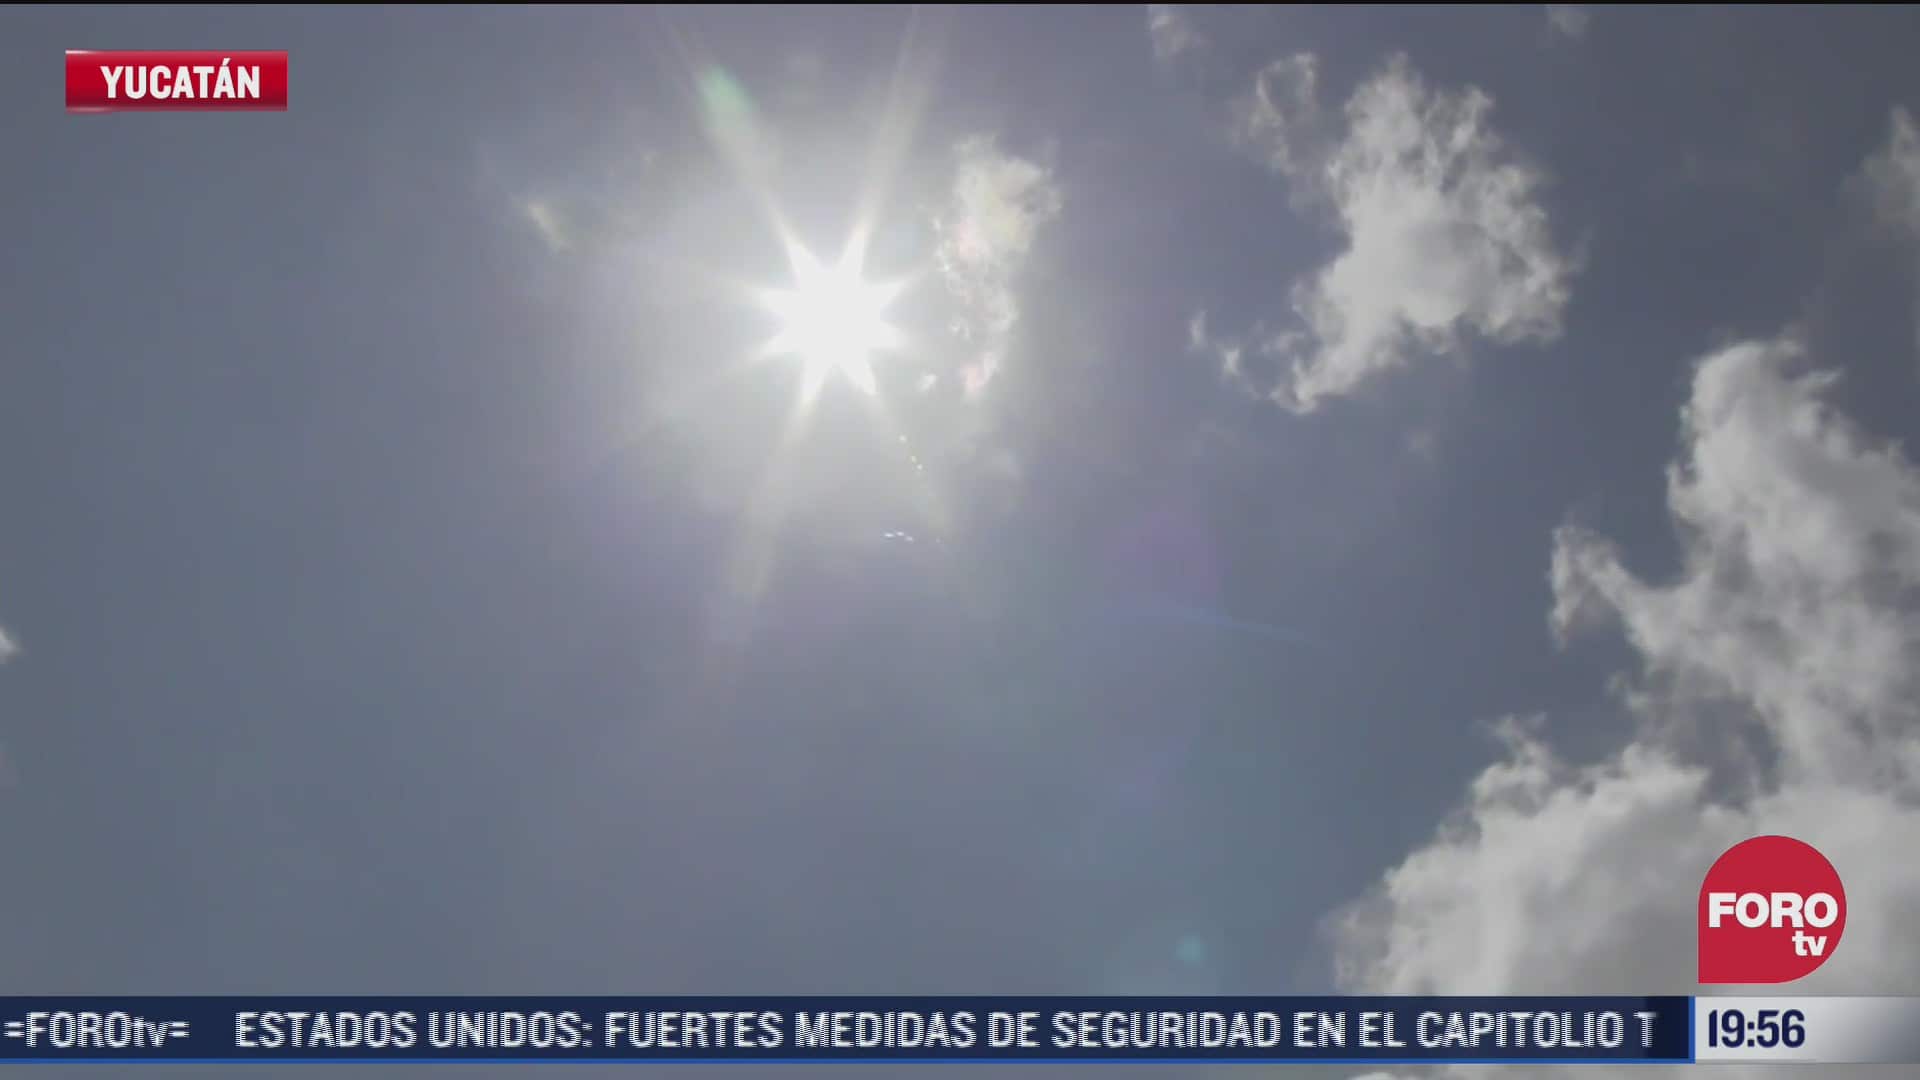 yucatan registra fuertes lluvias y calor extremo